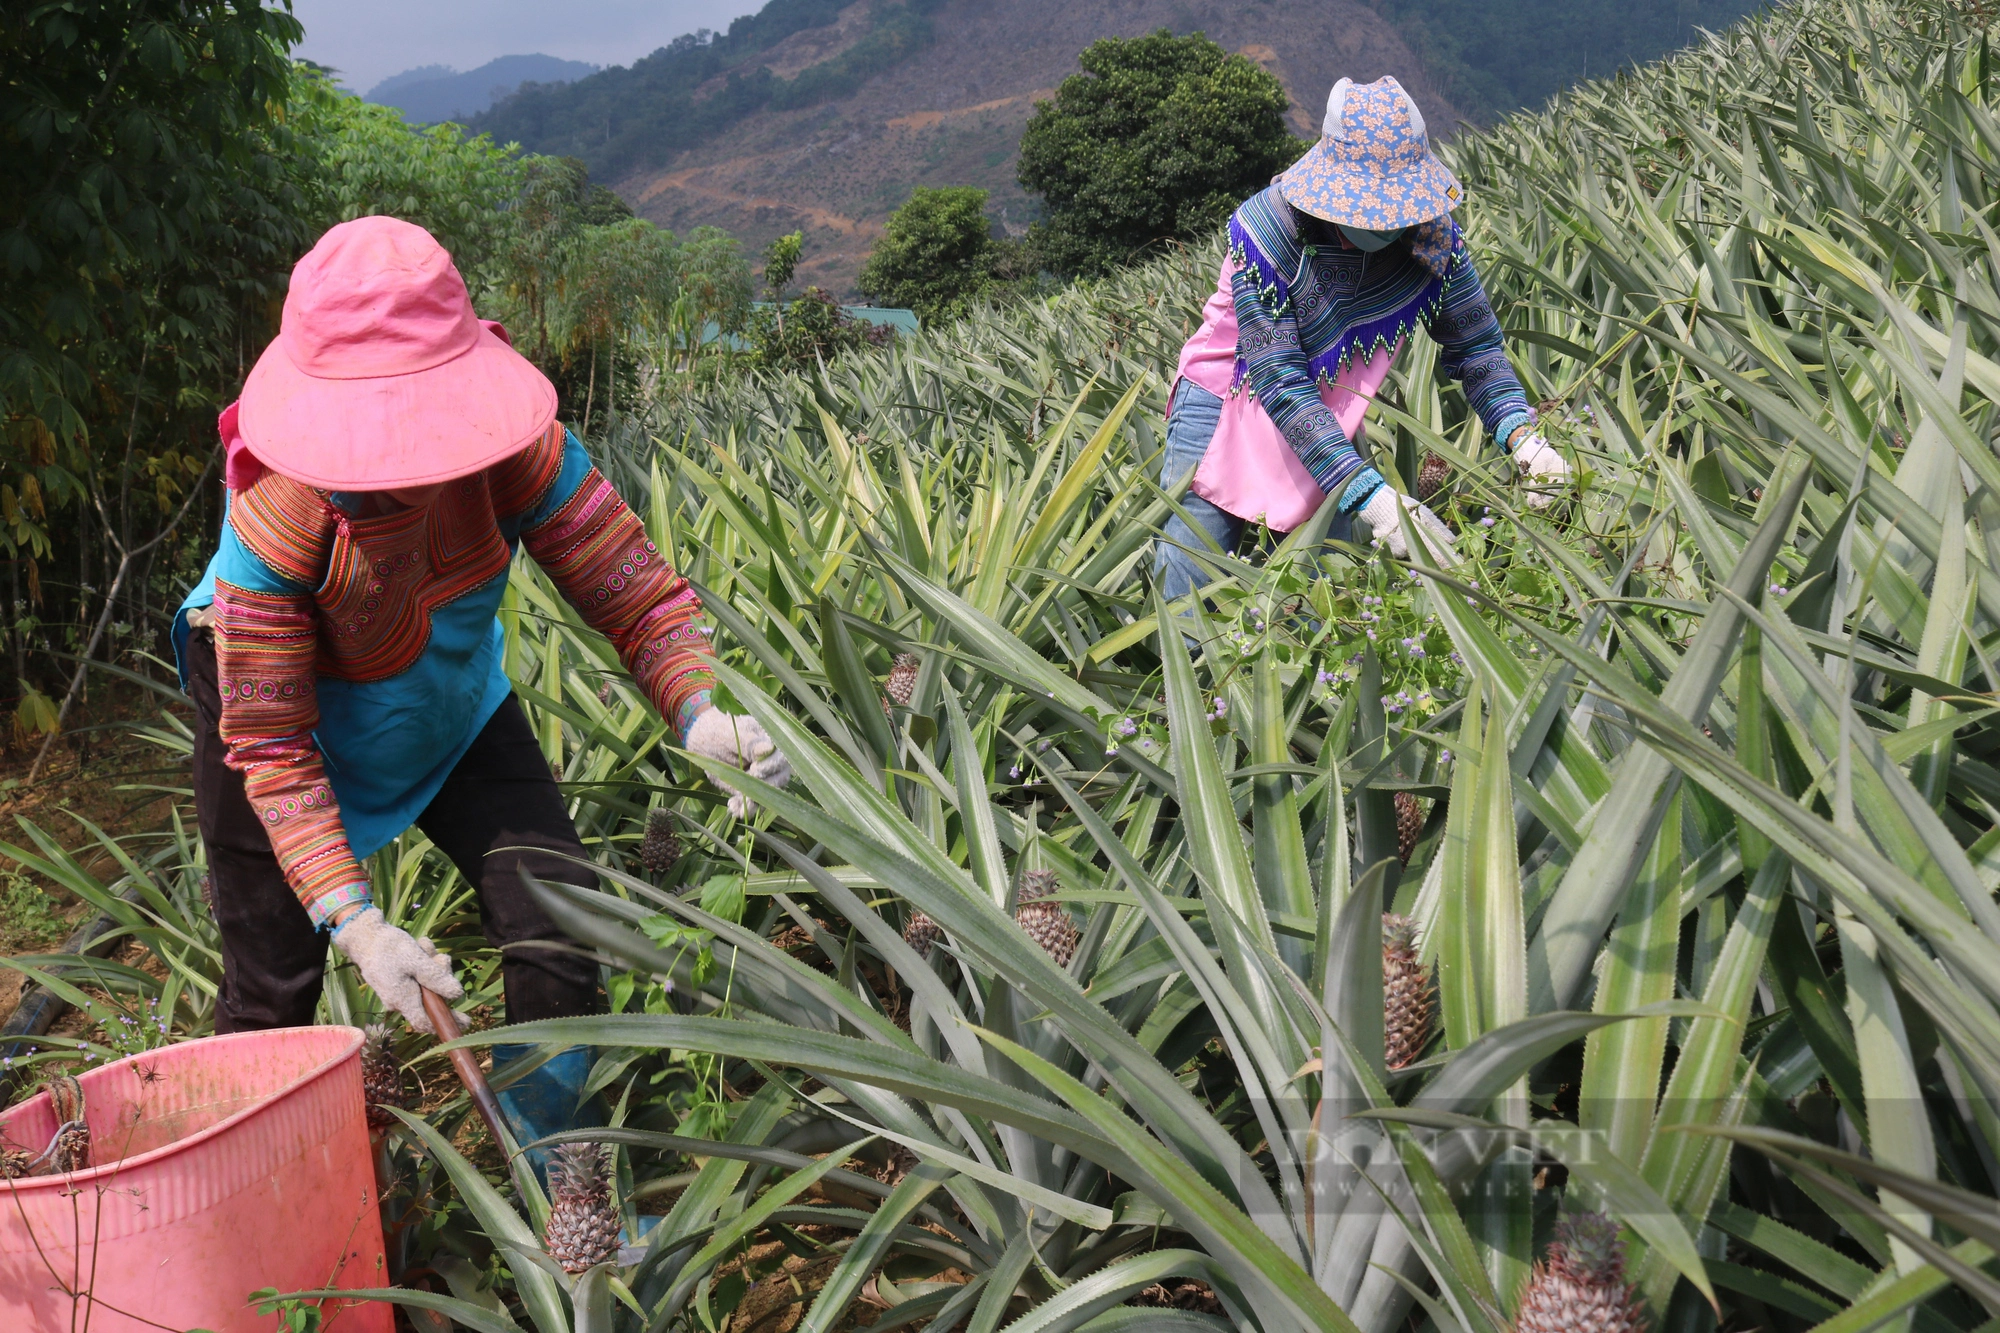 Tổ hội nông dân nghề nghiệp trồng dứa vùng biên ở Lào Cai mong muốn phát triển cây dứa bền vững - Ảnh 1.